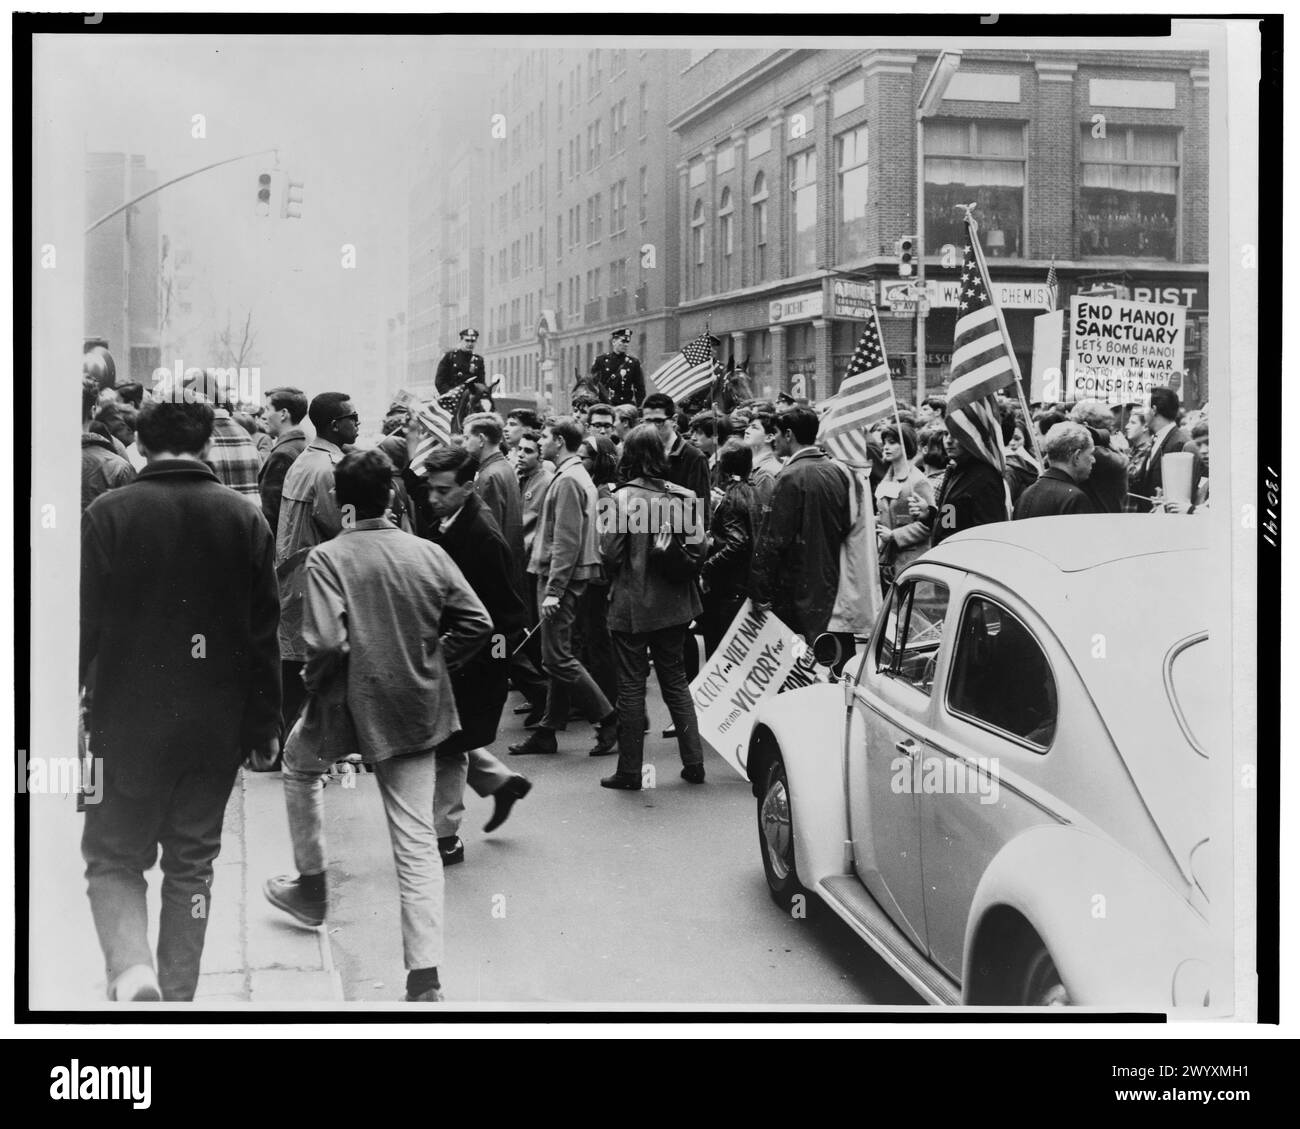 Demonstranten, marschieren in einer Innenstadt, mit Fahnen und Plakaten zur Unterstützung des Vietnamkriegs, Polizei zu Pferd im Hintergrund] Stockfoto